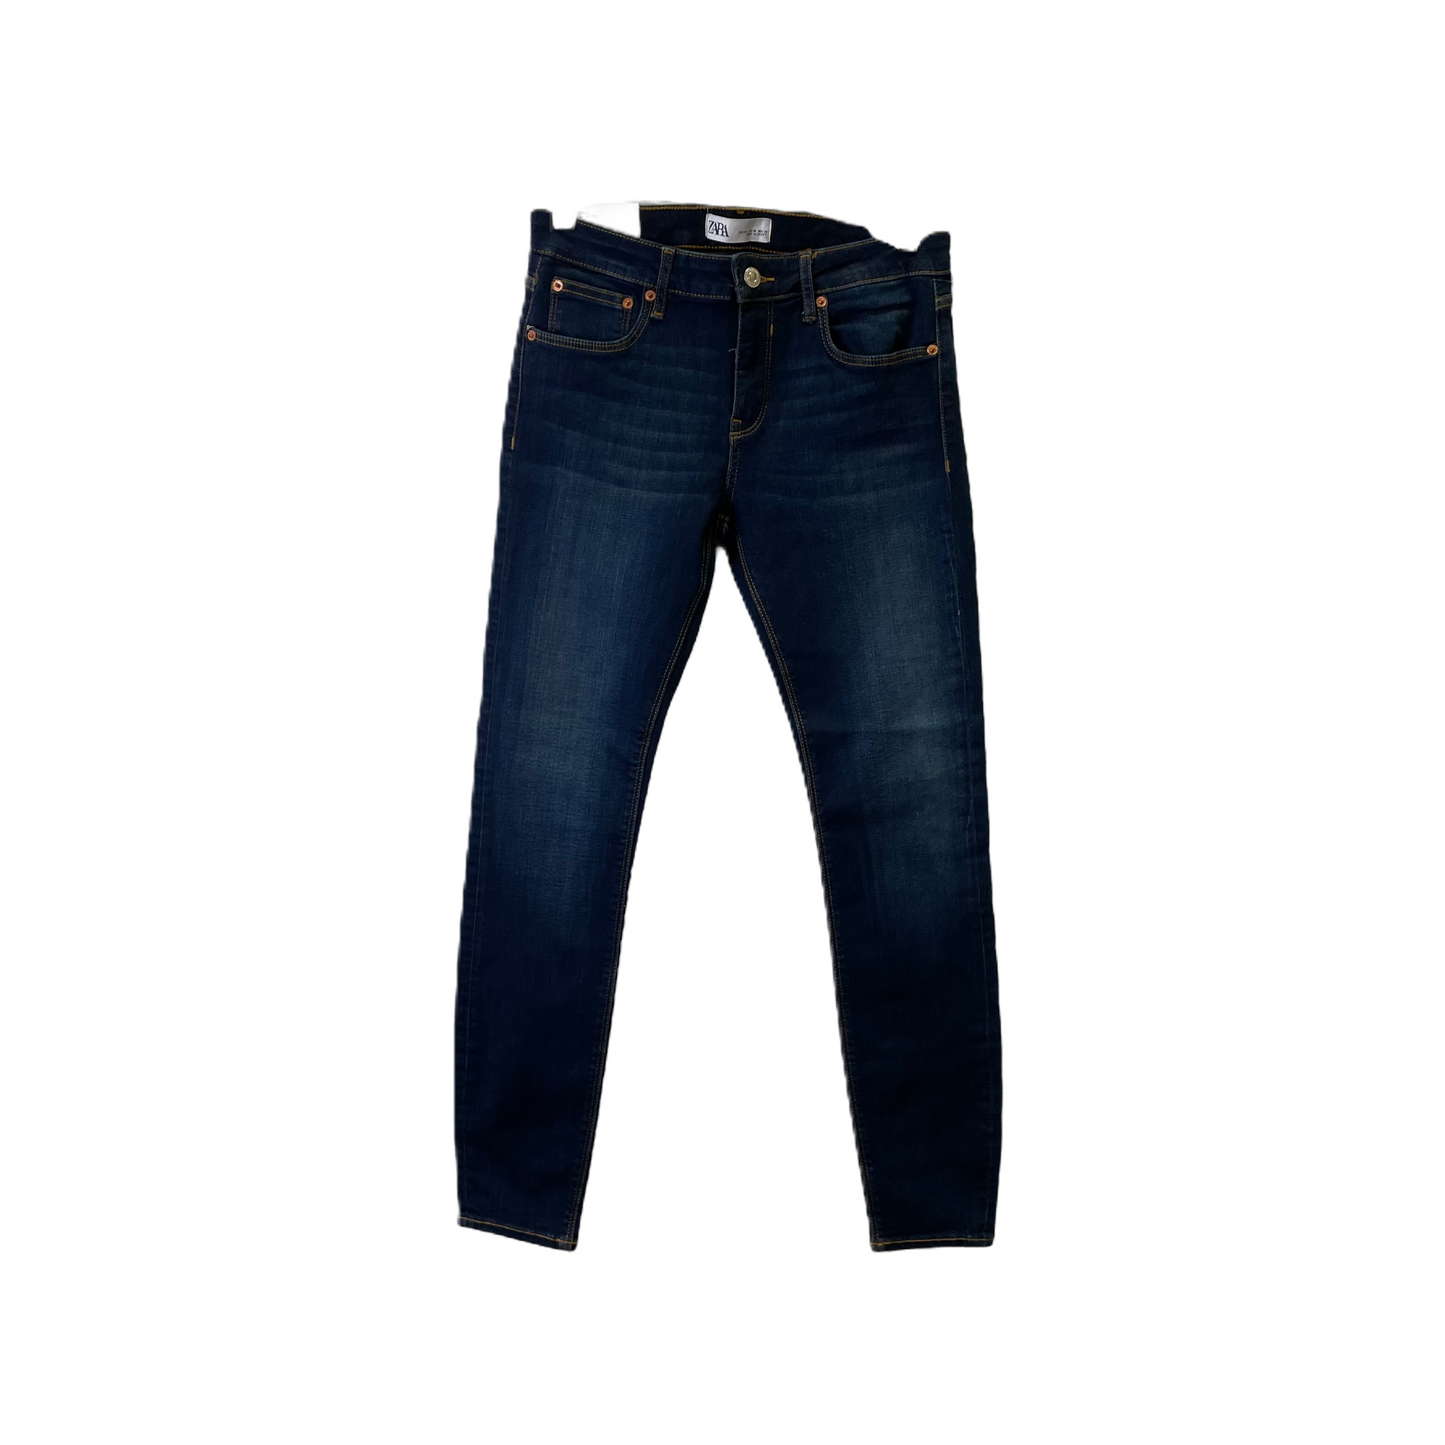 Blue Denim Jeans Skinny By Zara, Size: 8